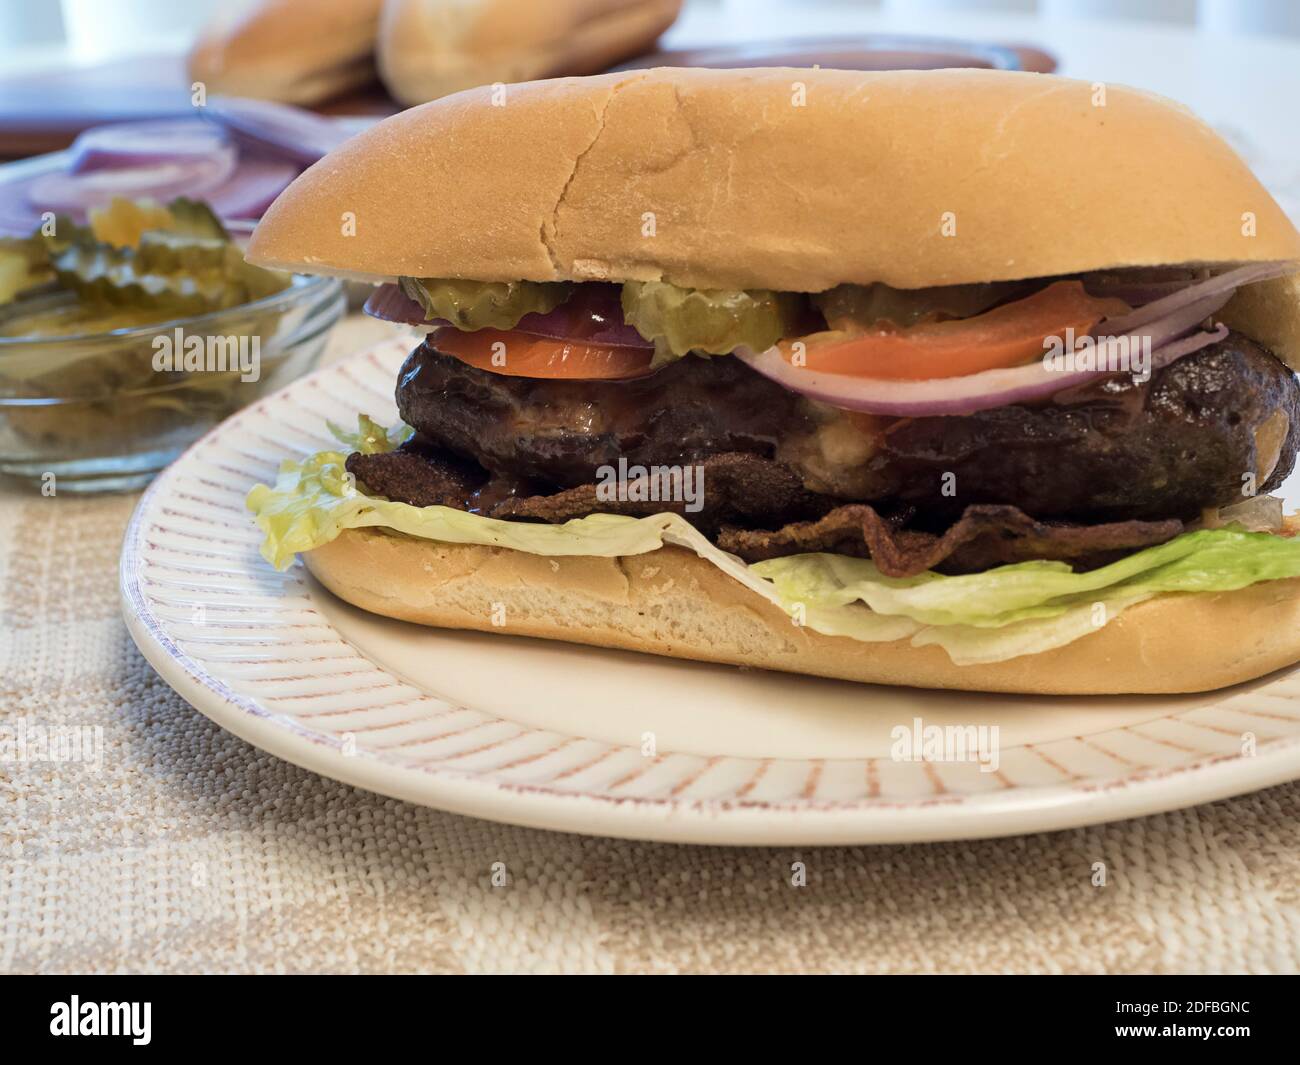 Cheeseburger farci avec garnitures, connu localement sous le nom de lucy juteuse Banque D'Images